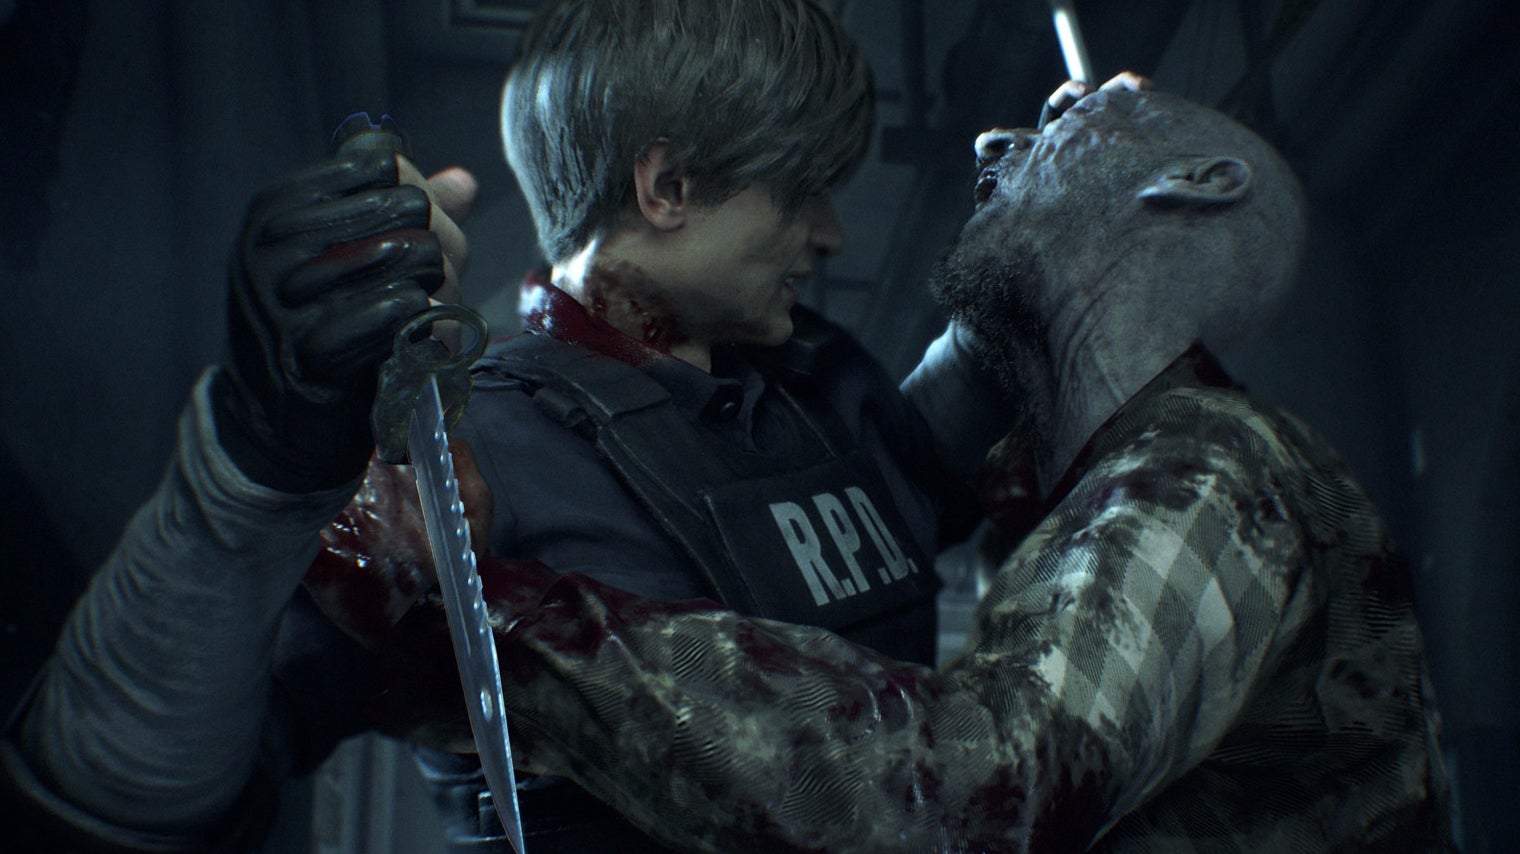 Afbeeldingen van Resident Evil 2 Remake kopen - 5 dingen die je moet weten